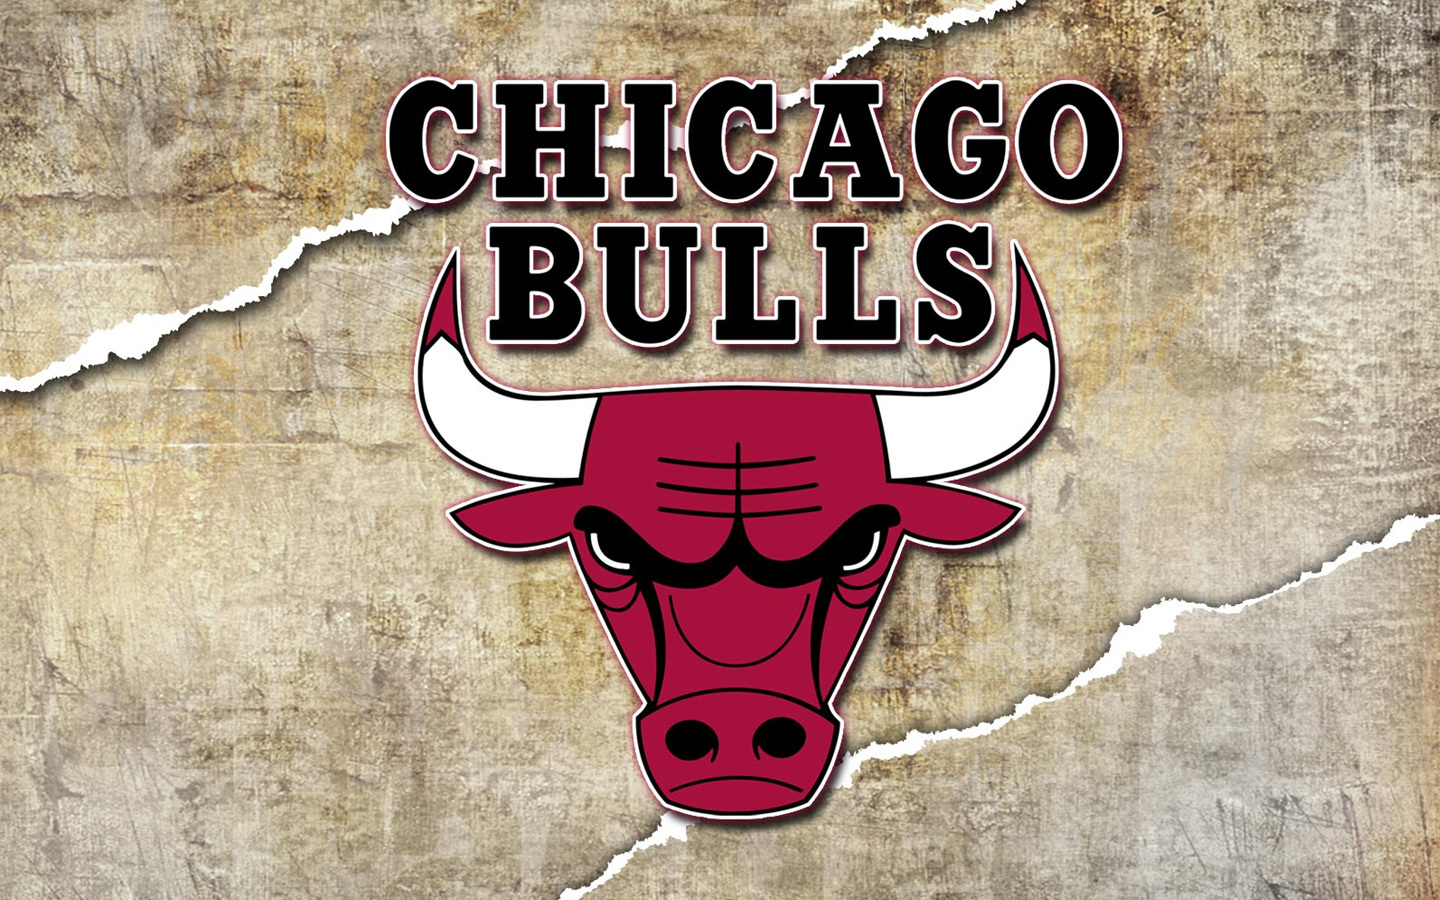 Chicago Bull Wallpaper For iPhone Wallpaperlepi